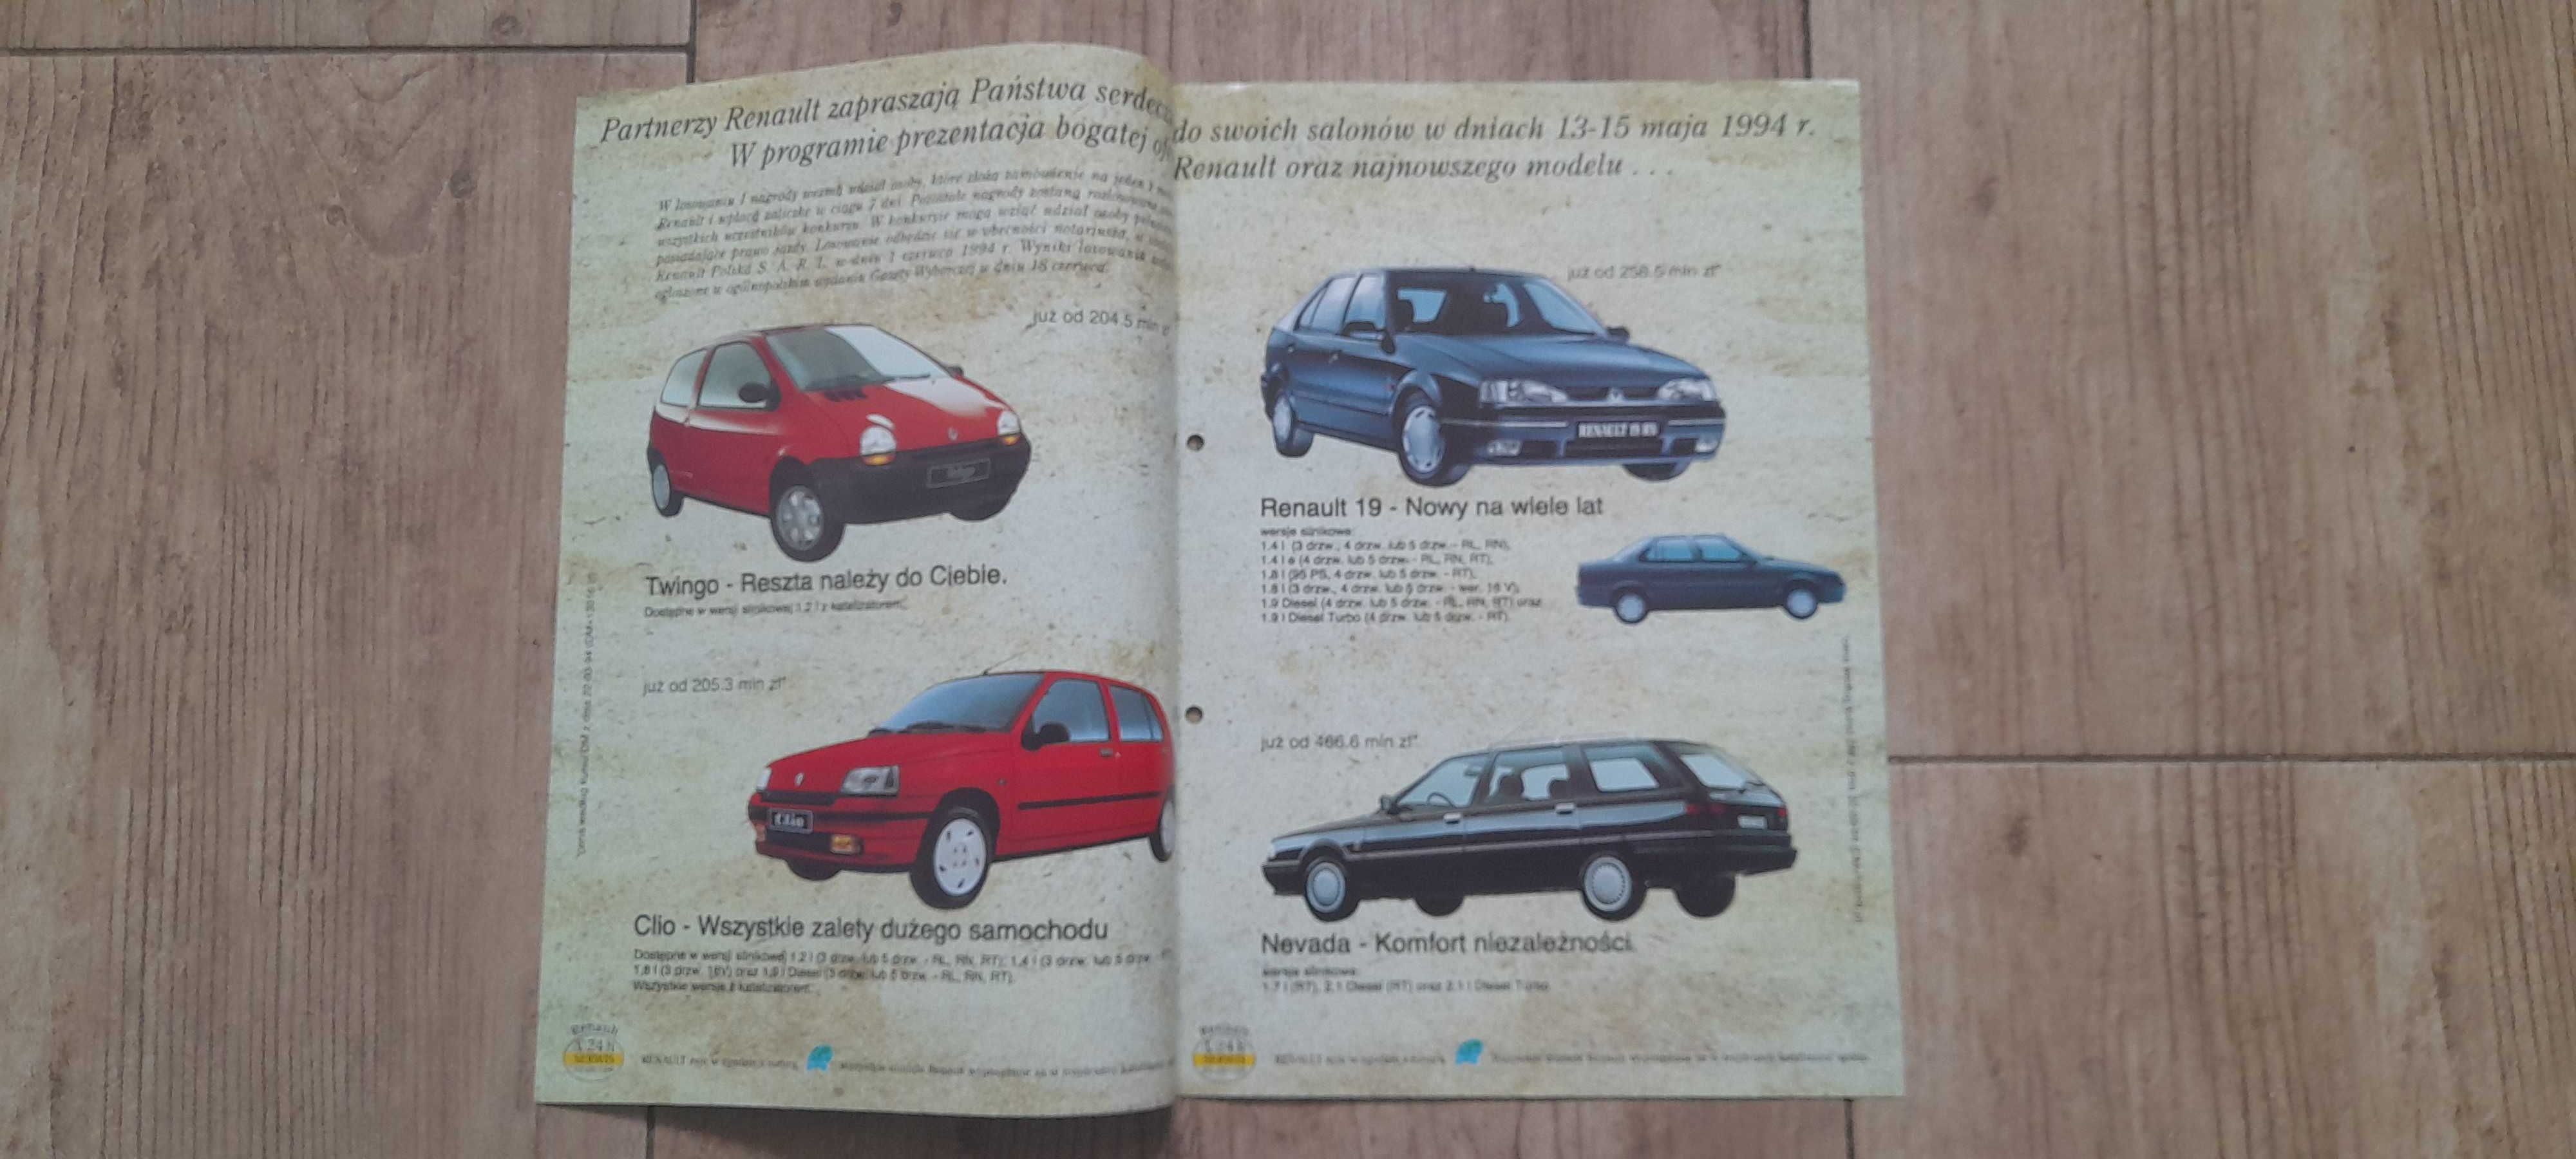 Renault dni otwartych drzwi 1994 prospekt polskojęzyczny, unikat